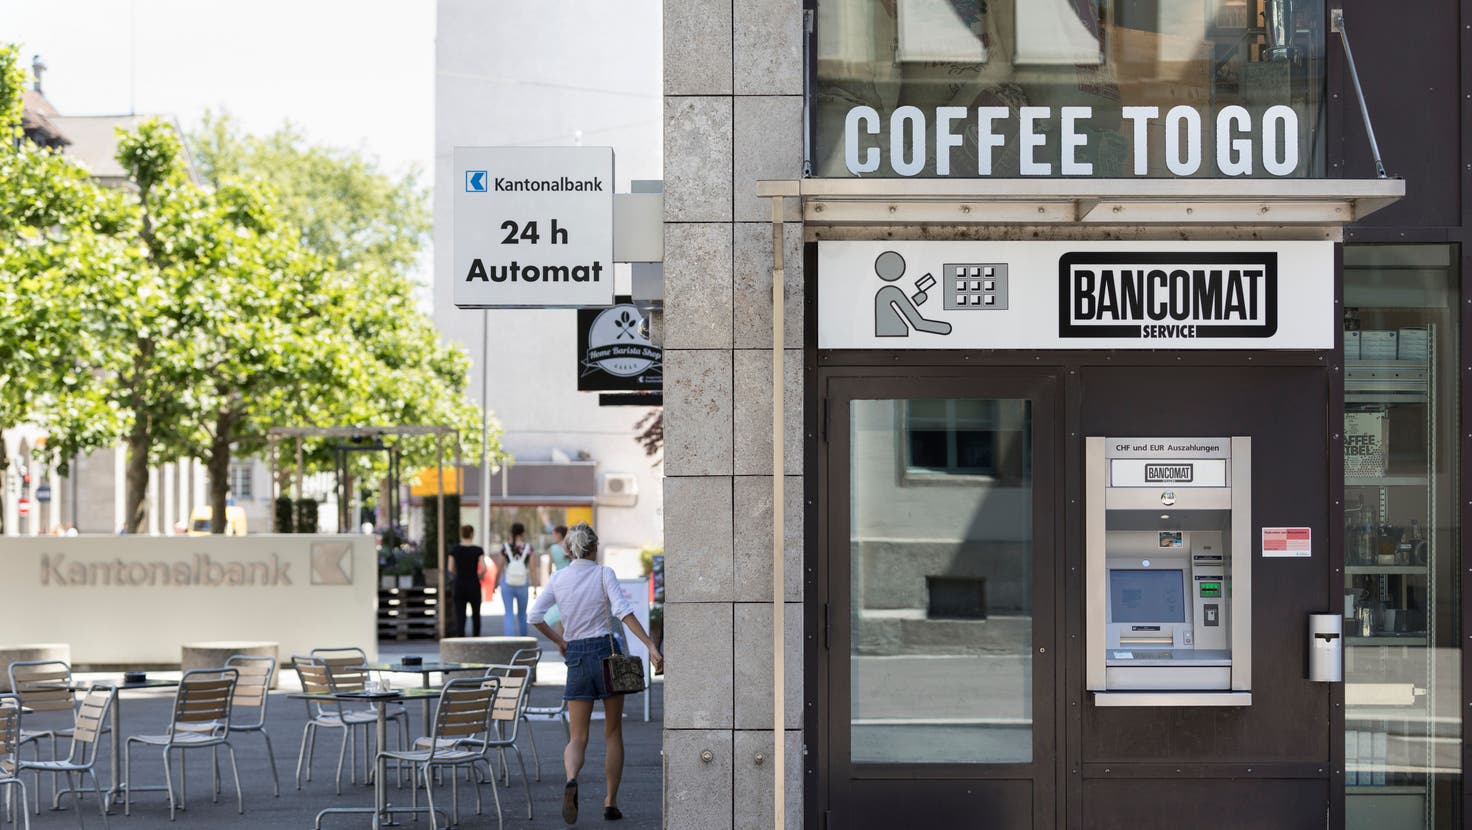 Die Zukunft der Bancomaten sieht angesichts der Coronakrise alles andere als rosig aus. (Symbolbild) (Keystone)